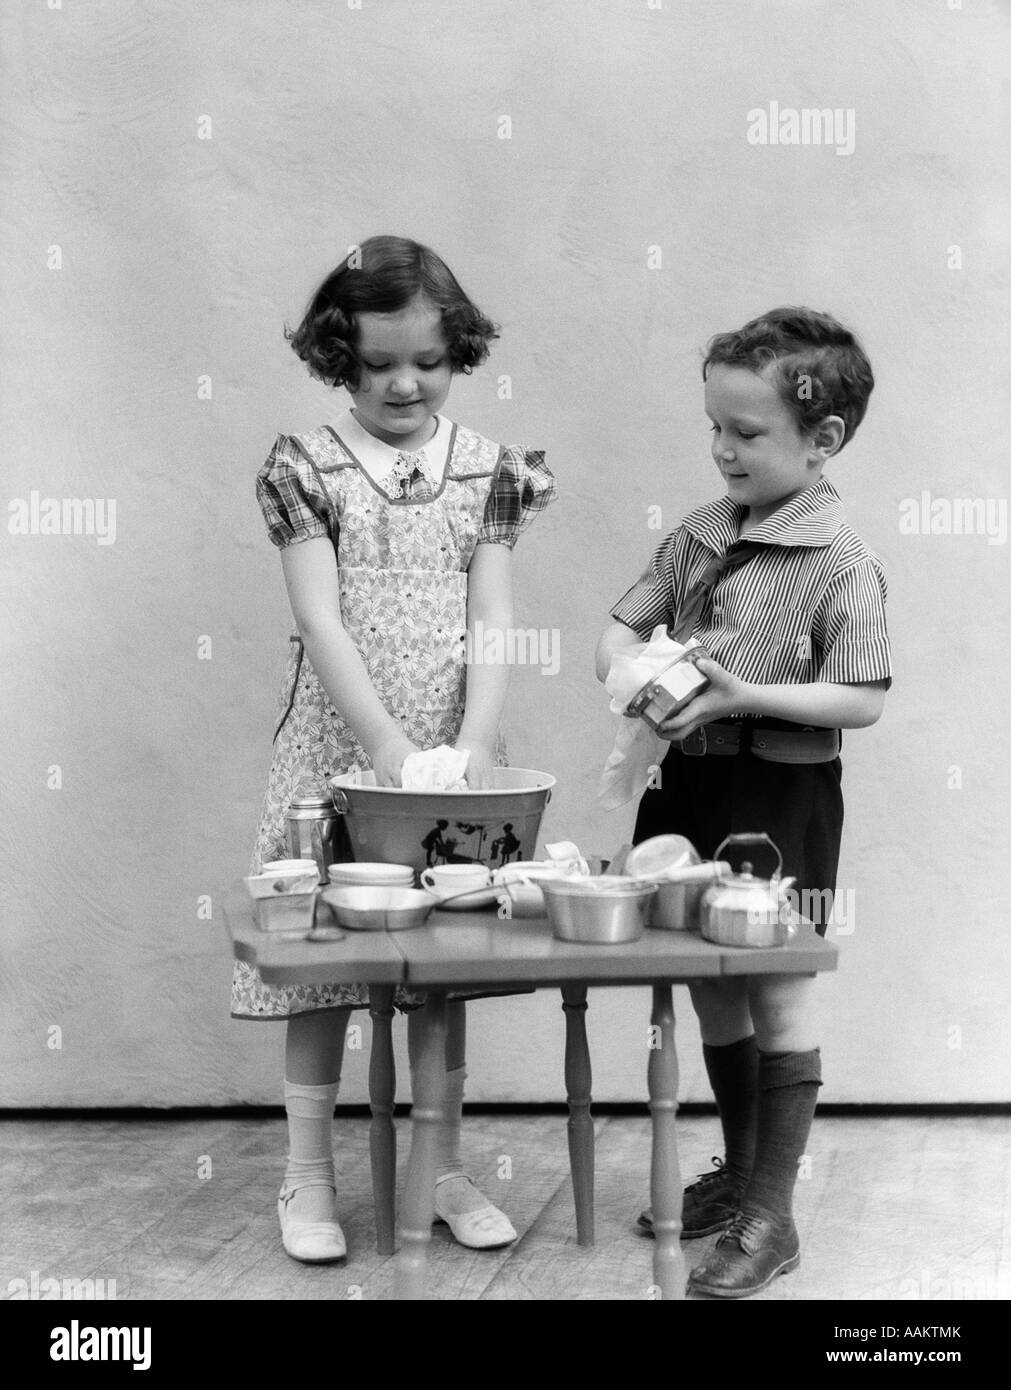 Spielzeug Der 1940er Jahre Stockfotos und -bilder Kaufen - Alamy